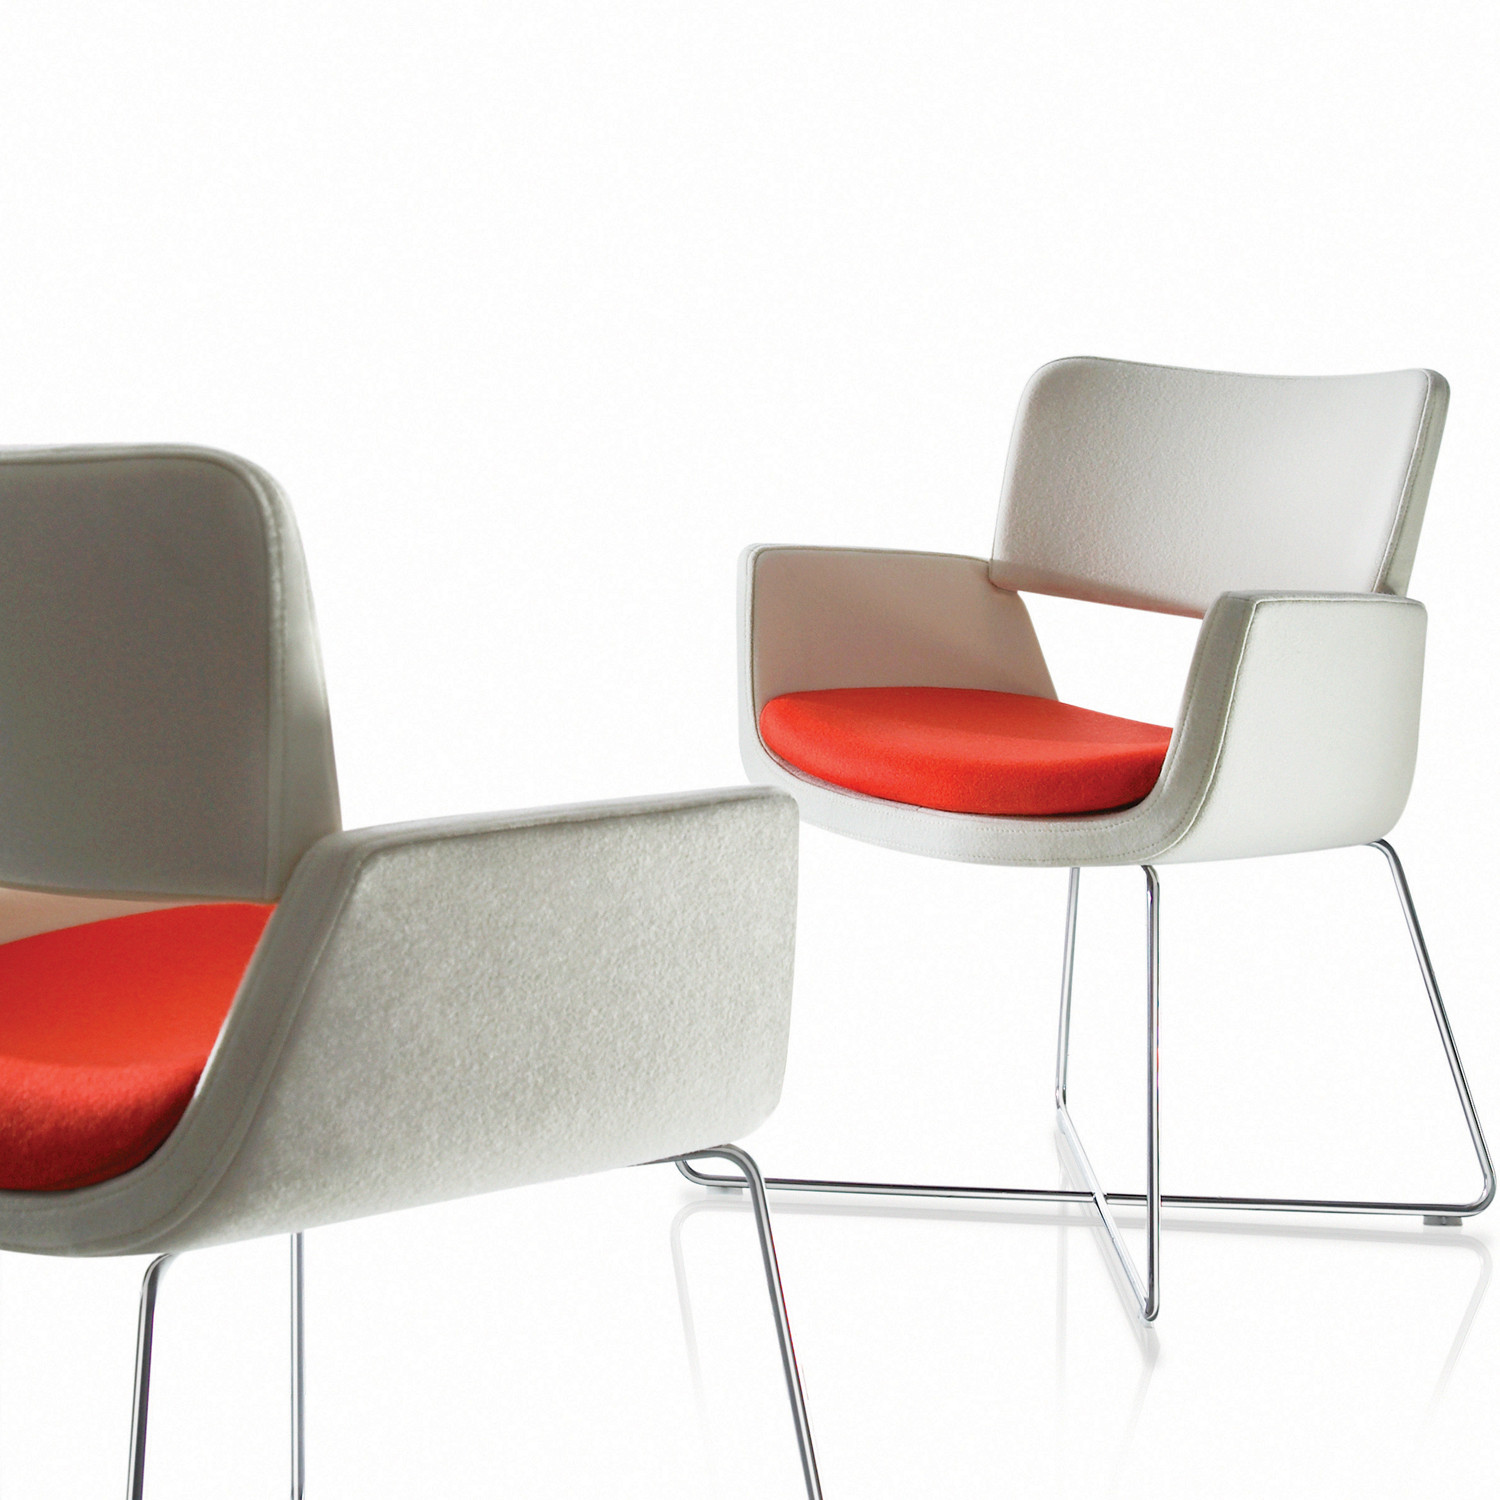 Korus Chairs by David Fox